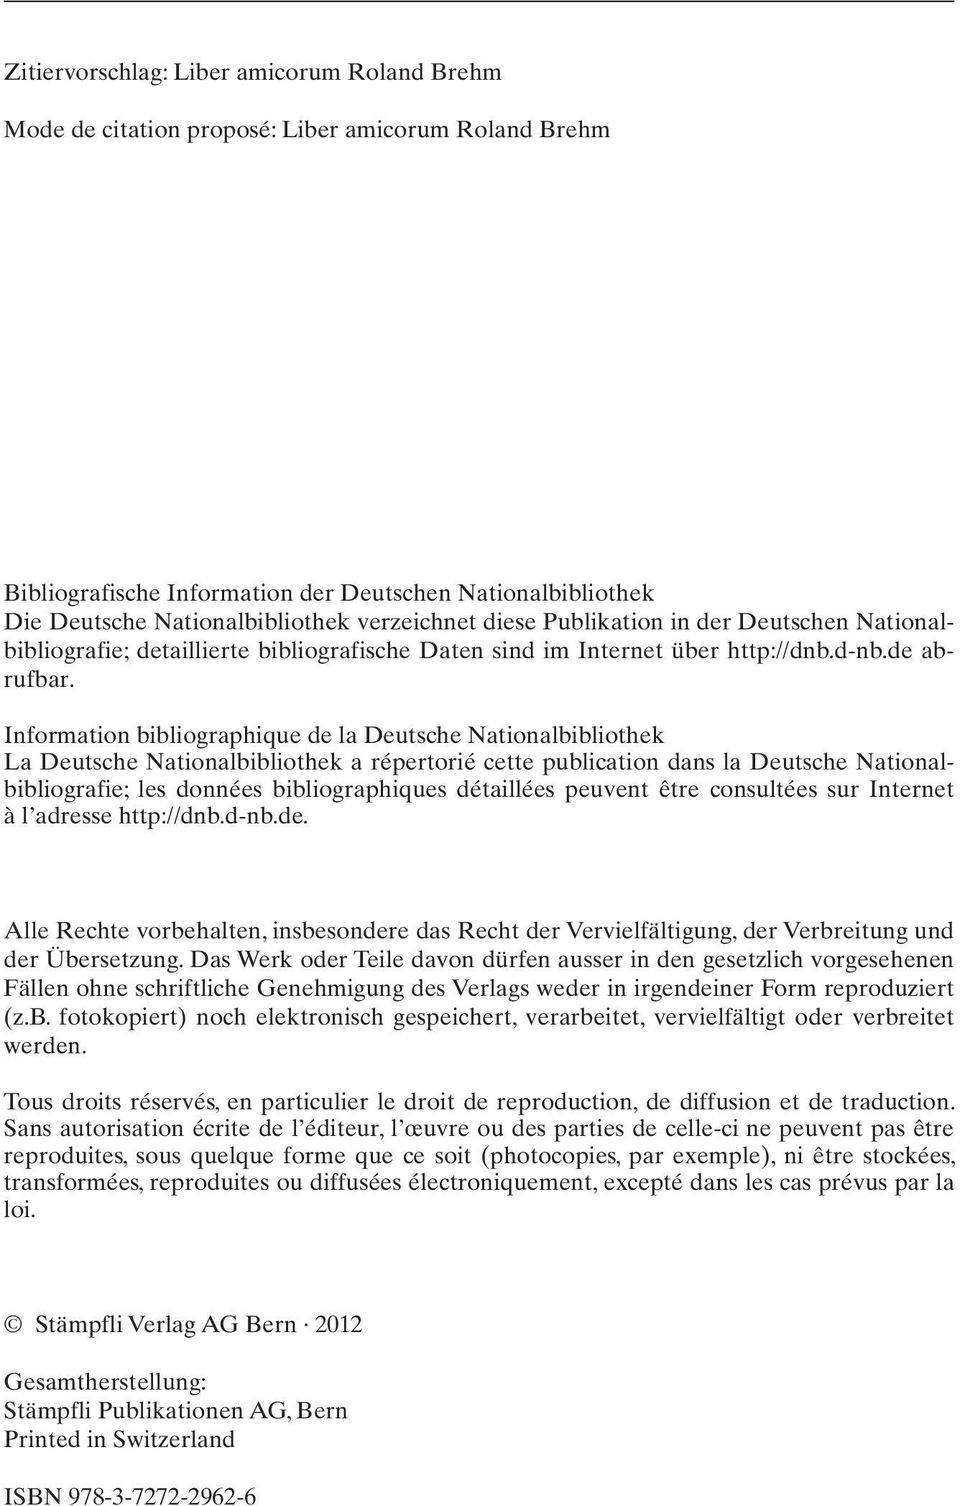 Information bibliographique de la Deutsche Nationalbibliothek La Deutsche Nationalbibliothek a répertorié cette publication dans la Deutsche Nationalbibliografie; les données bibliographiques